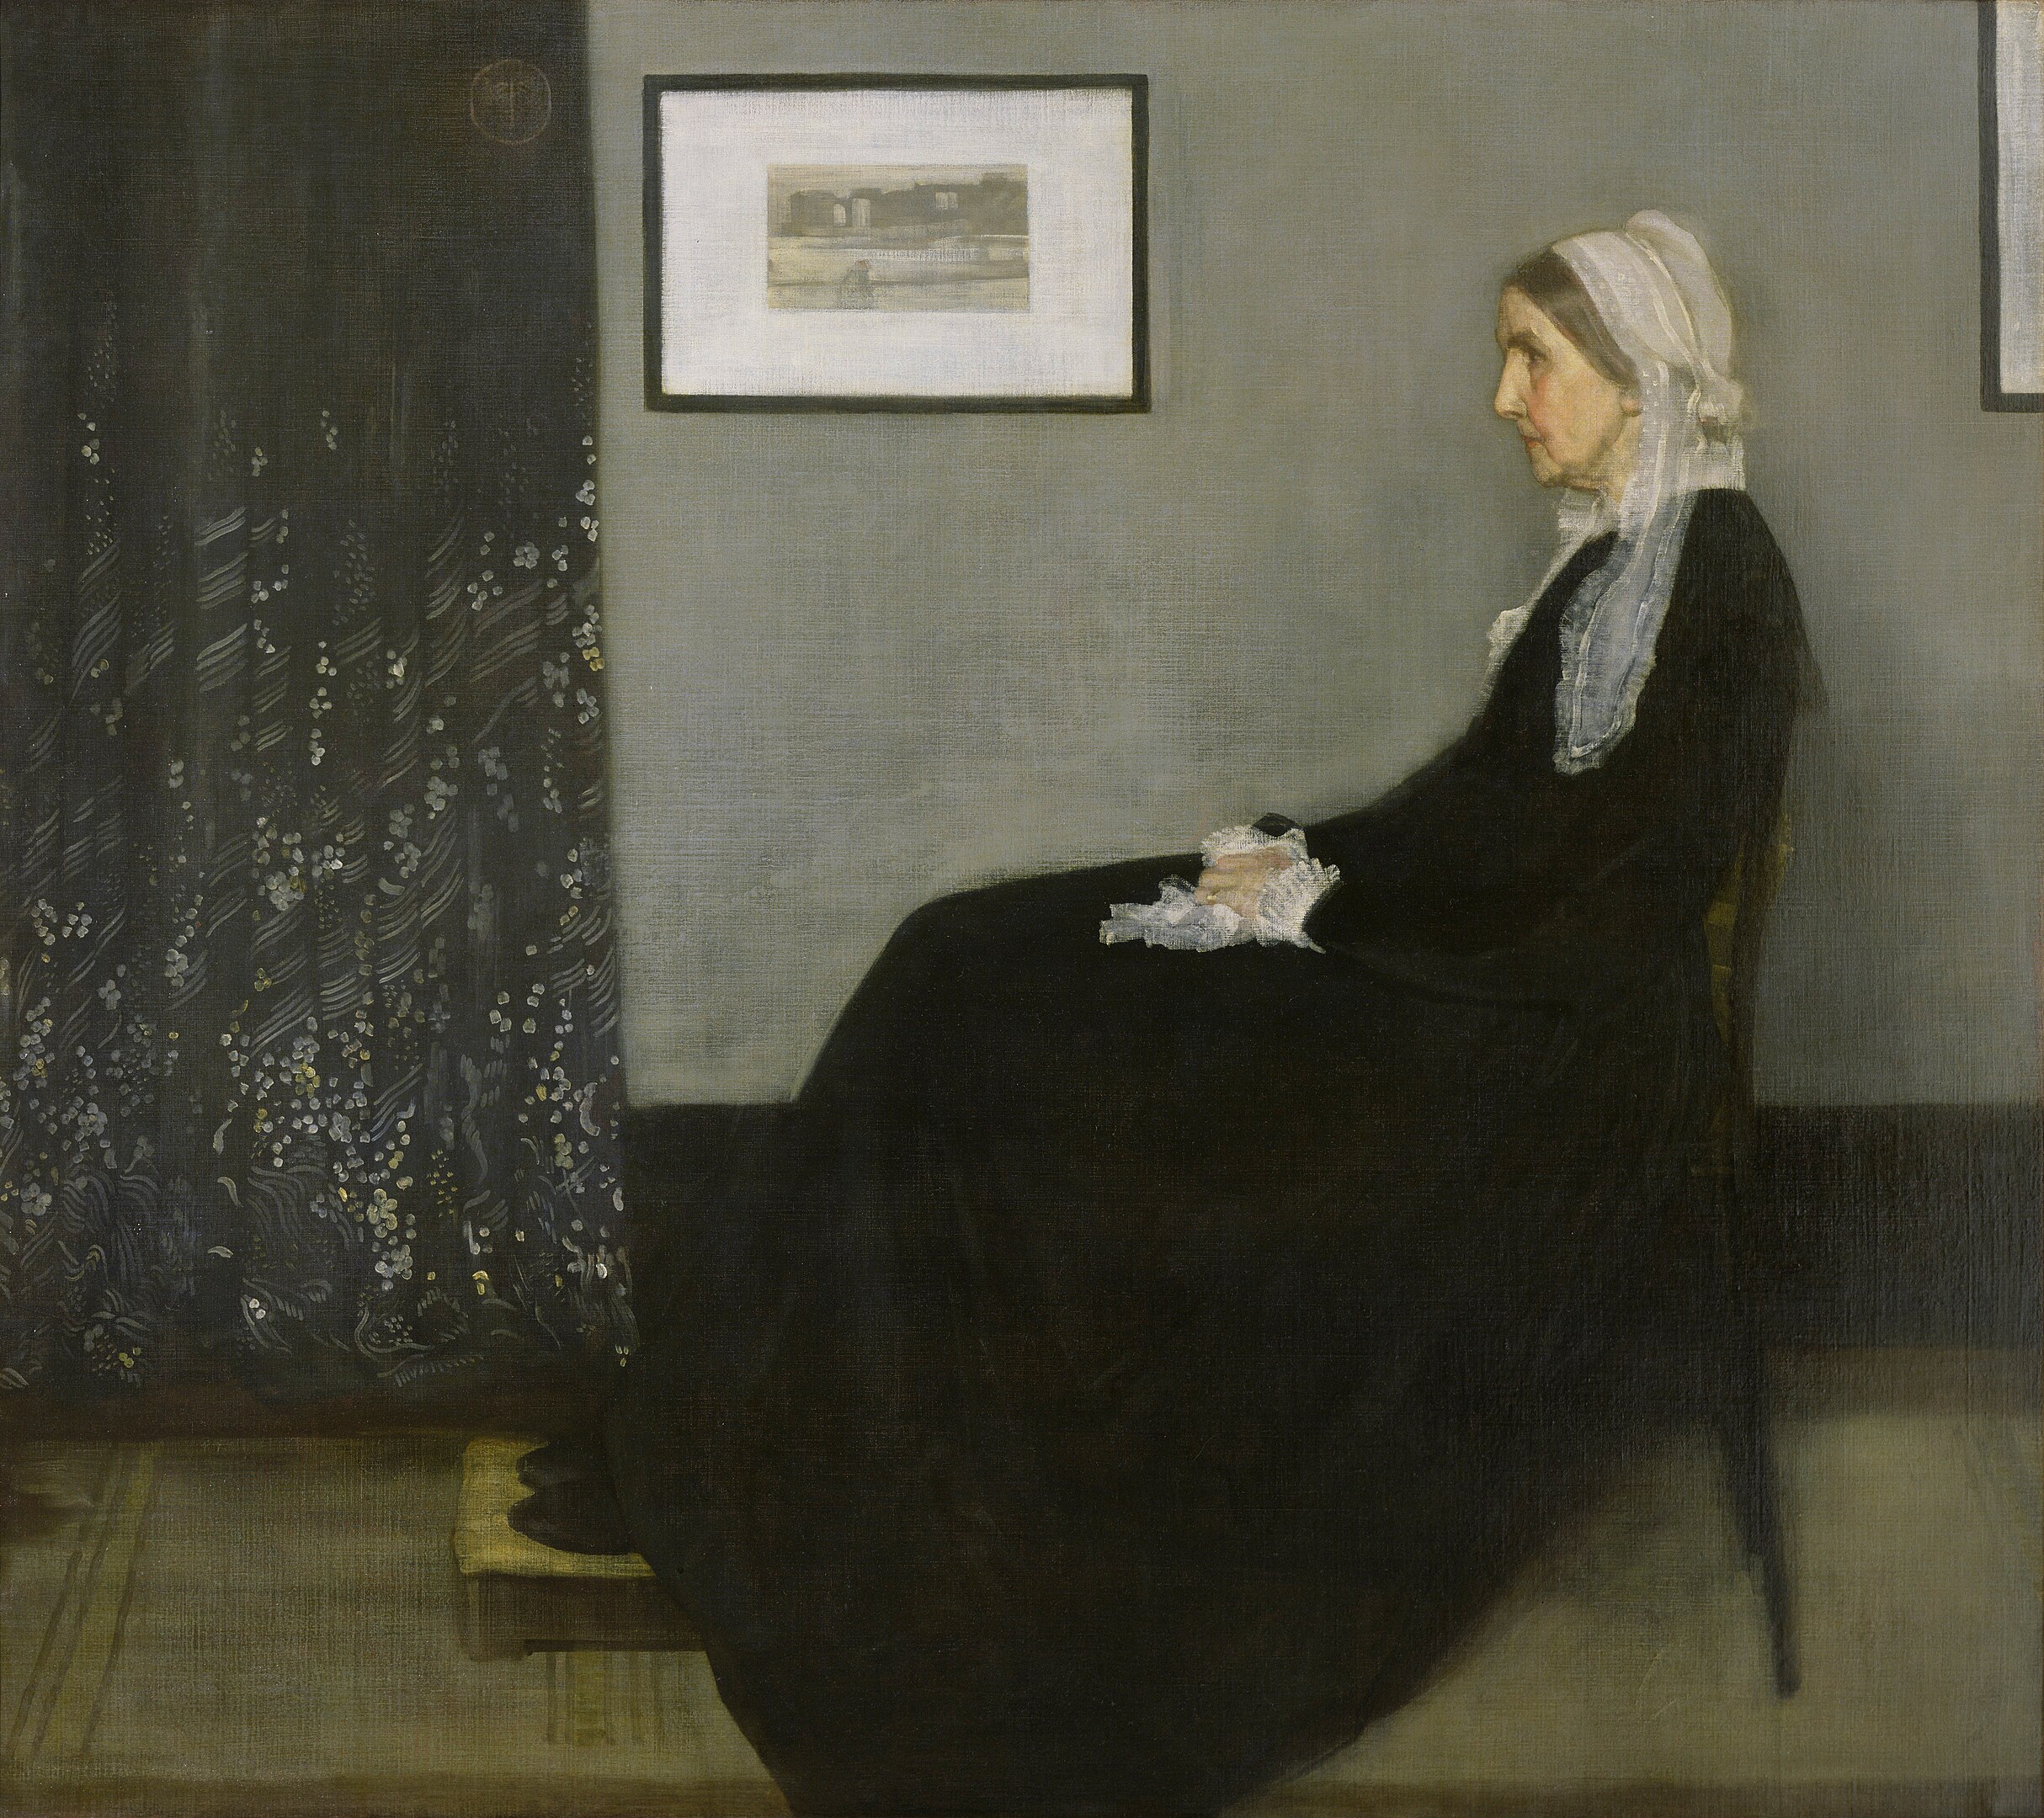 La Mère de Whistler by James Abbott McNeill Whistler - 1871 - 144,3 cm × 162,4 cm Musée d'Orsay